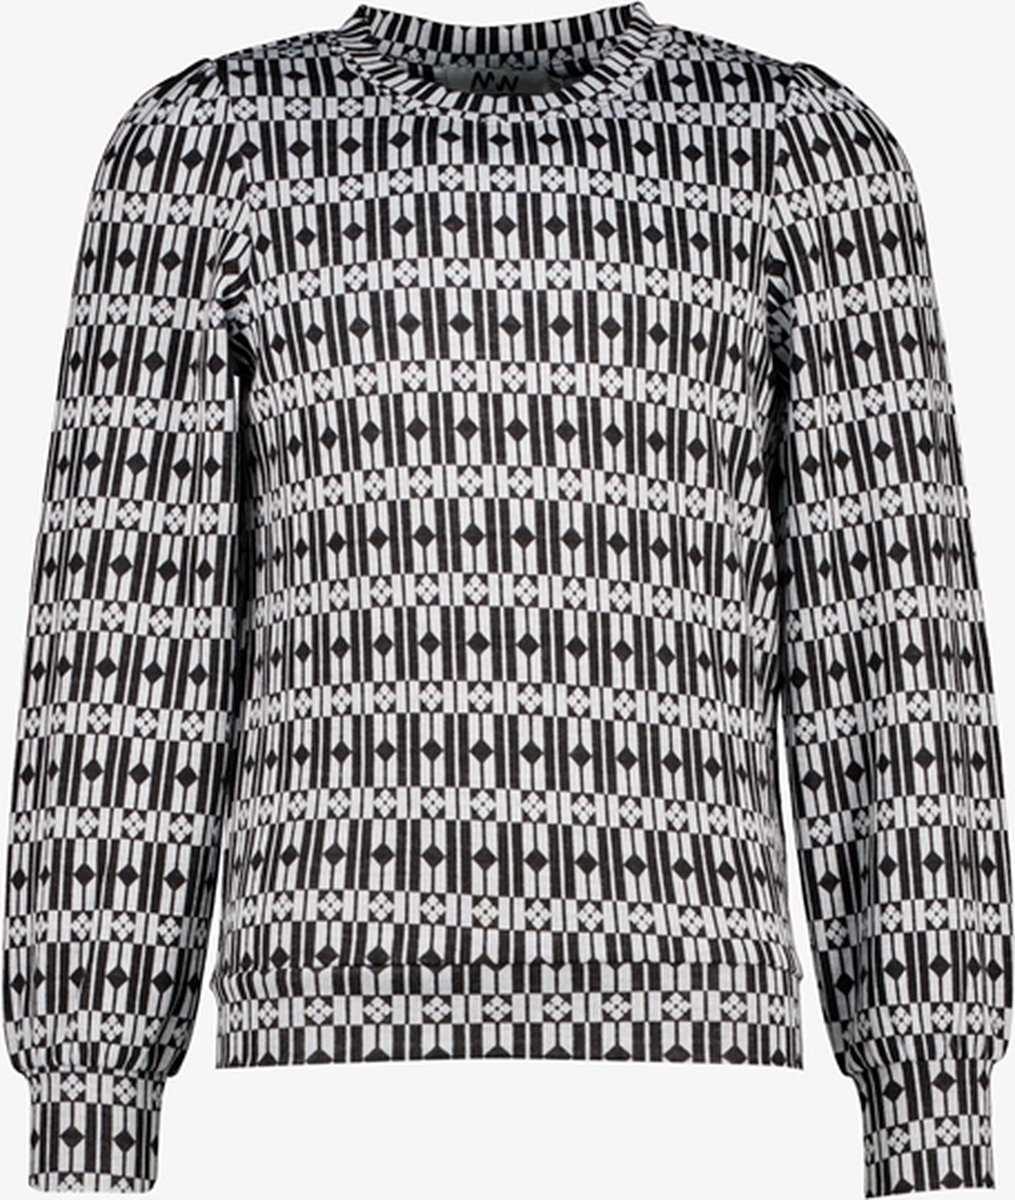 MyWay meisjes trui met print zwart/wit - Maat 122/128